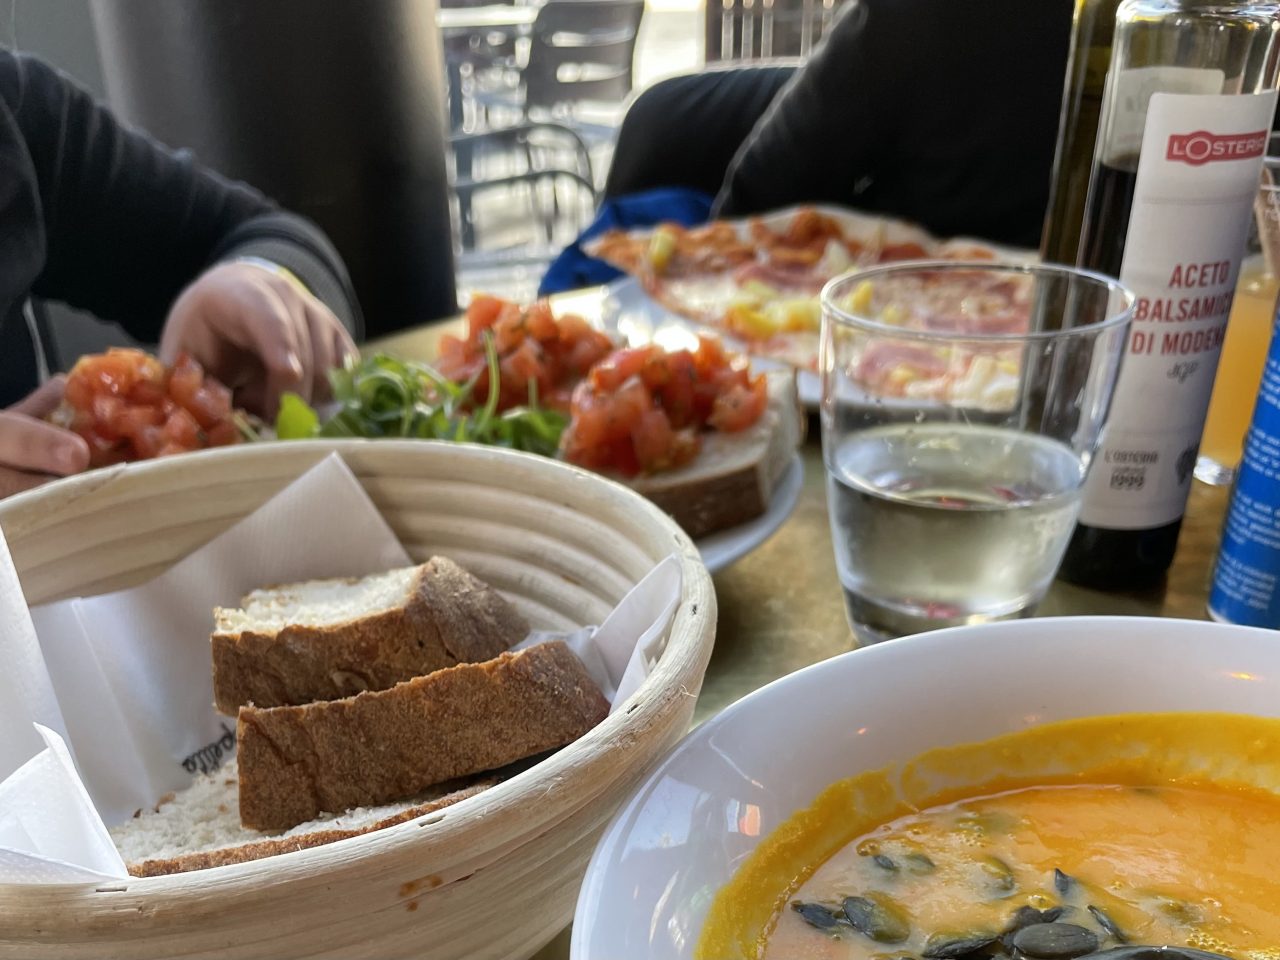 Kürbissuppe, Brot im Korb, Tomatenbrot, Pizza mit Getränken und Ölflaschen auf einem Tisch und im Hintergrund sind teilweise zwei Kinder zu erkennen